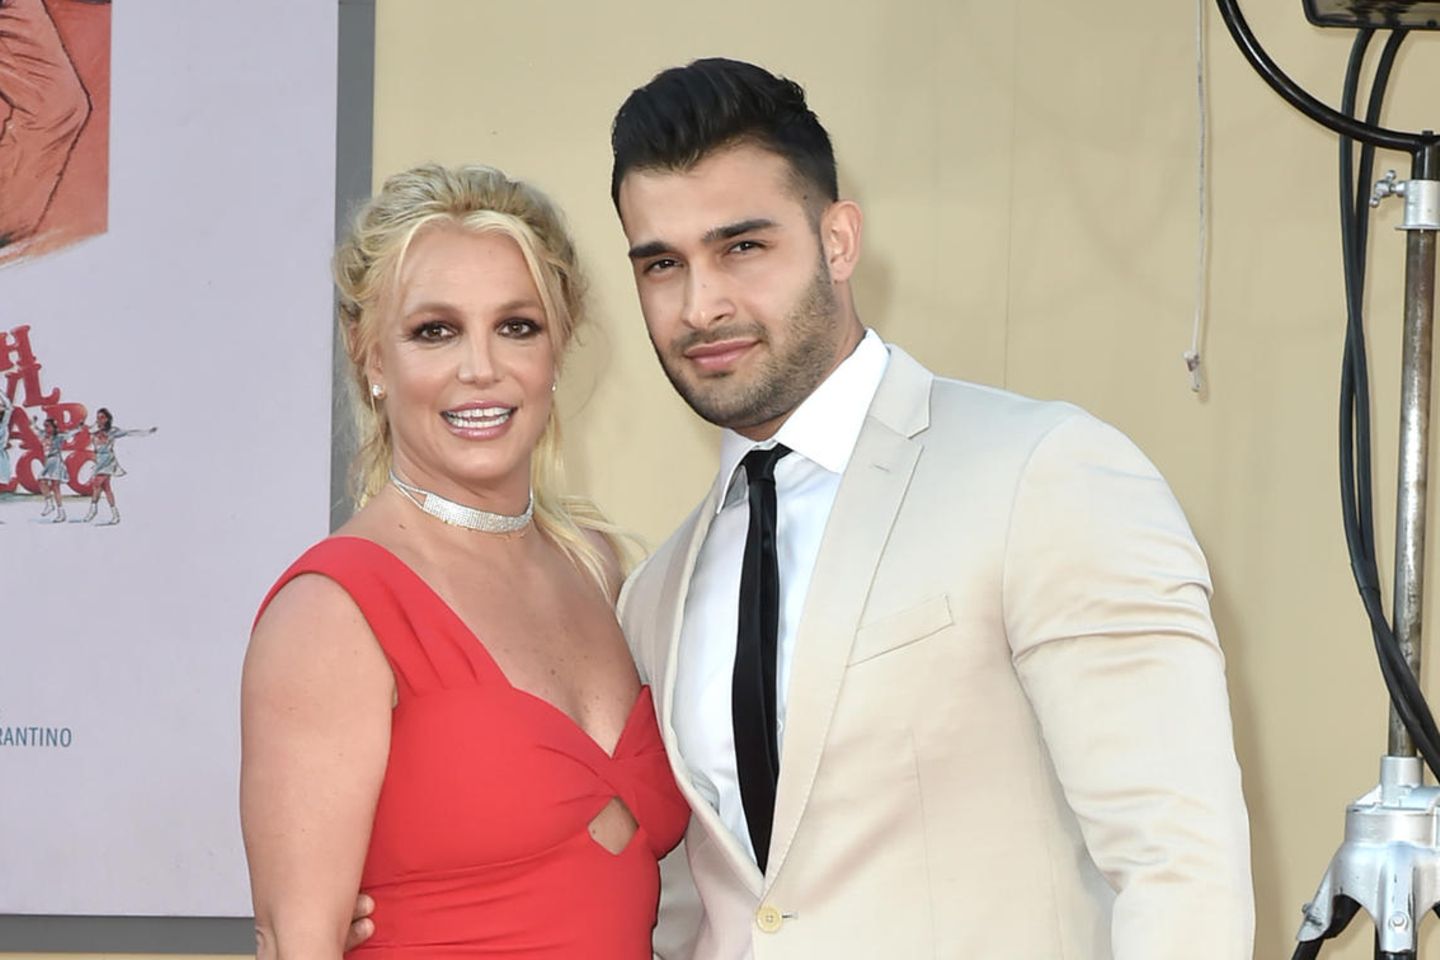 Britney Spears und Sam Asghari